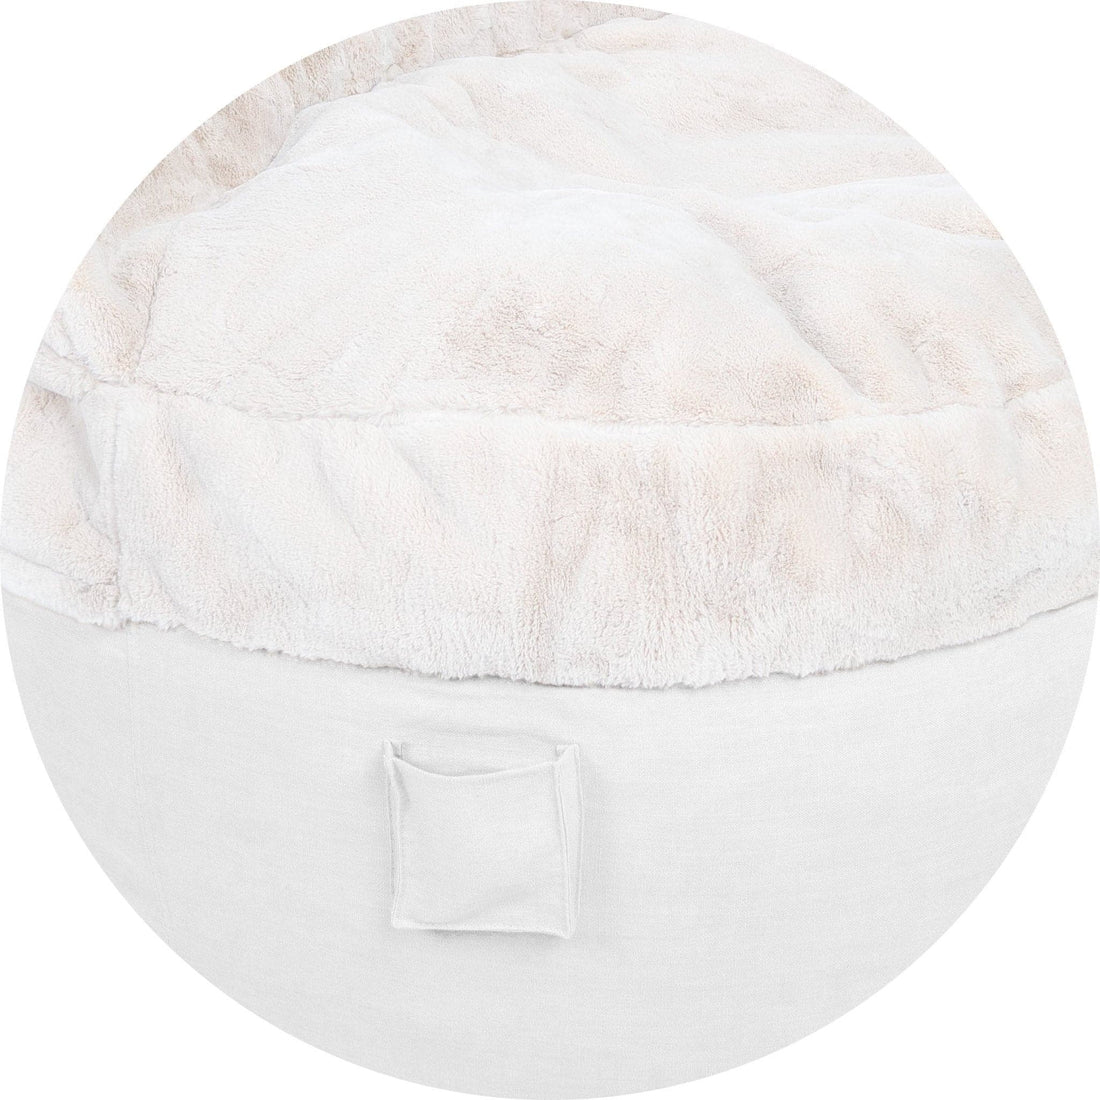 Full Cover - NEST Bunny Fur w/ Pillow